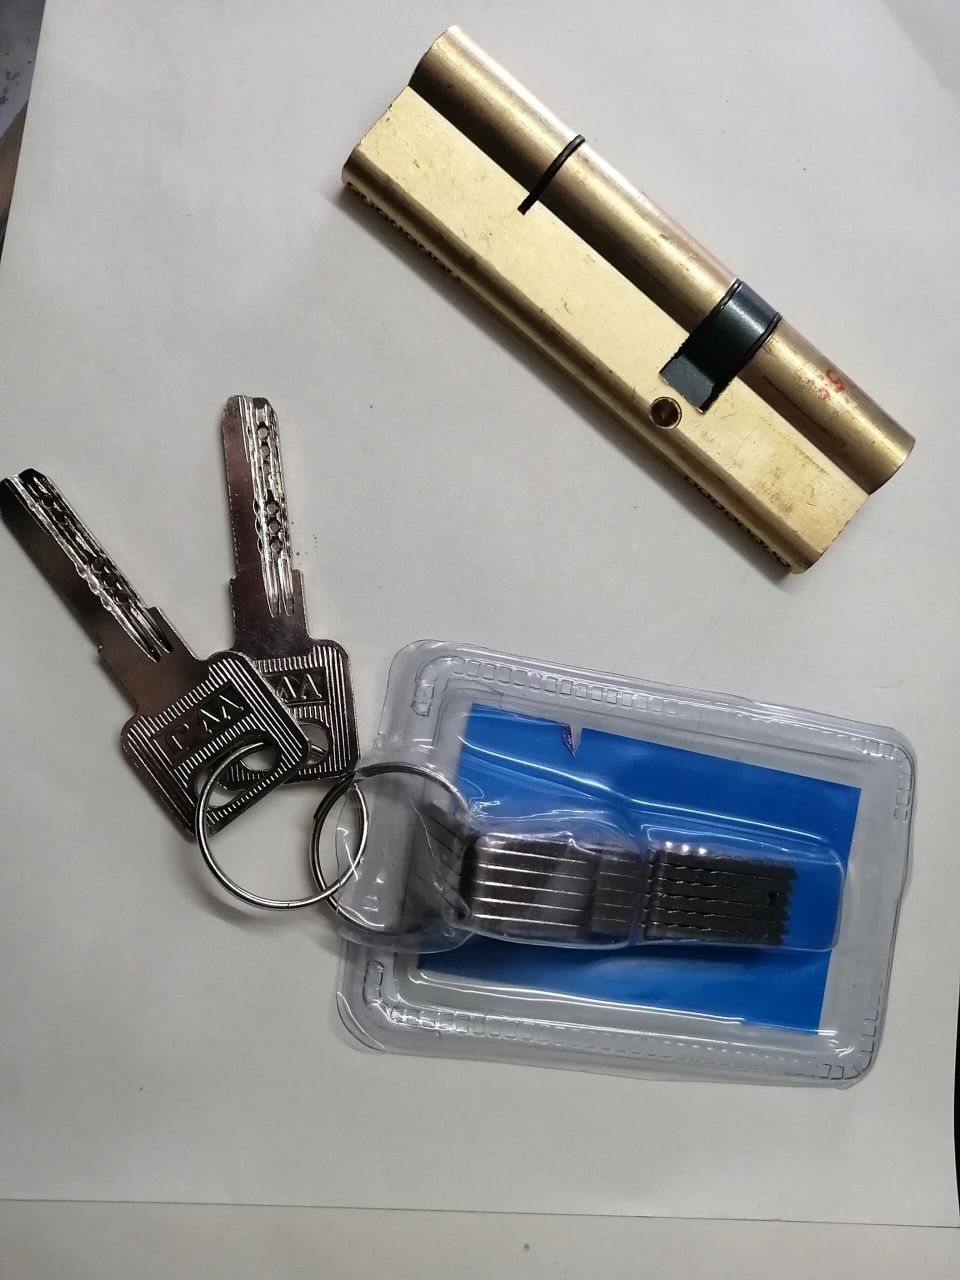 普通防盗门锁芯,有6把钥匙,有两把ab钥匙